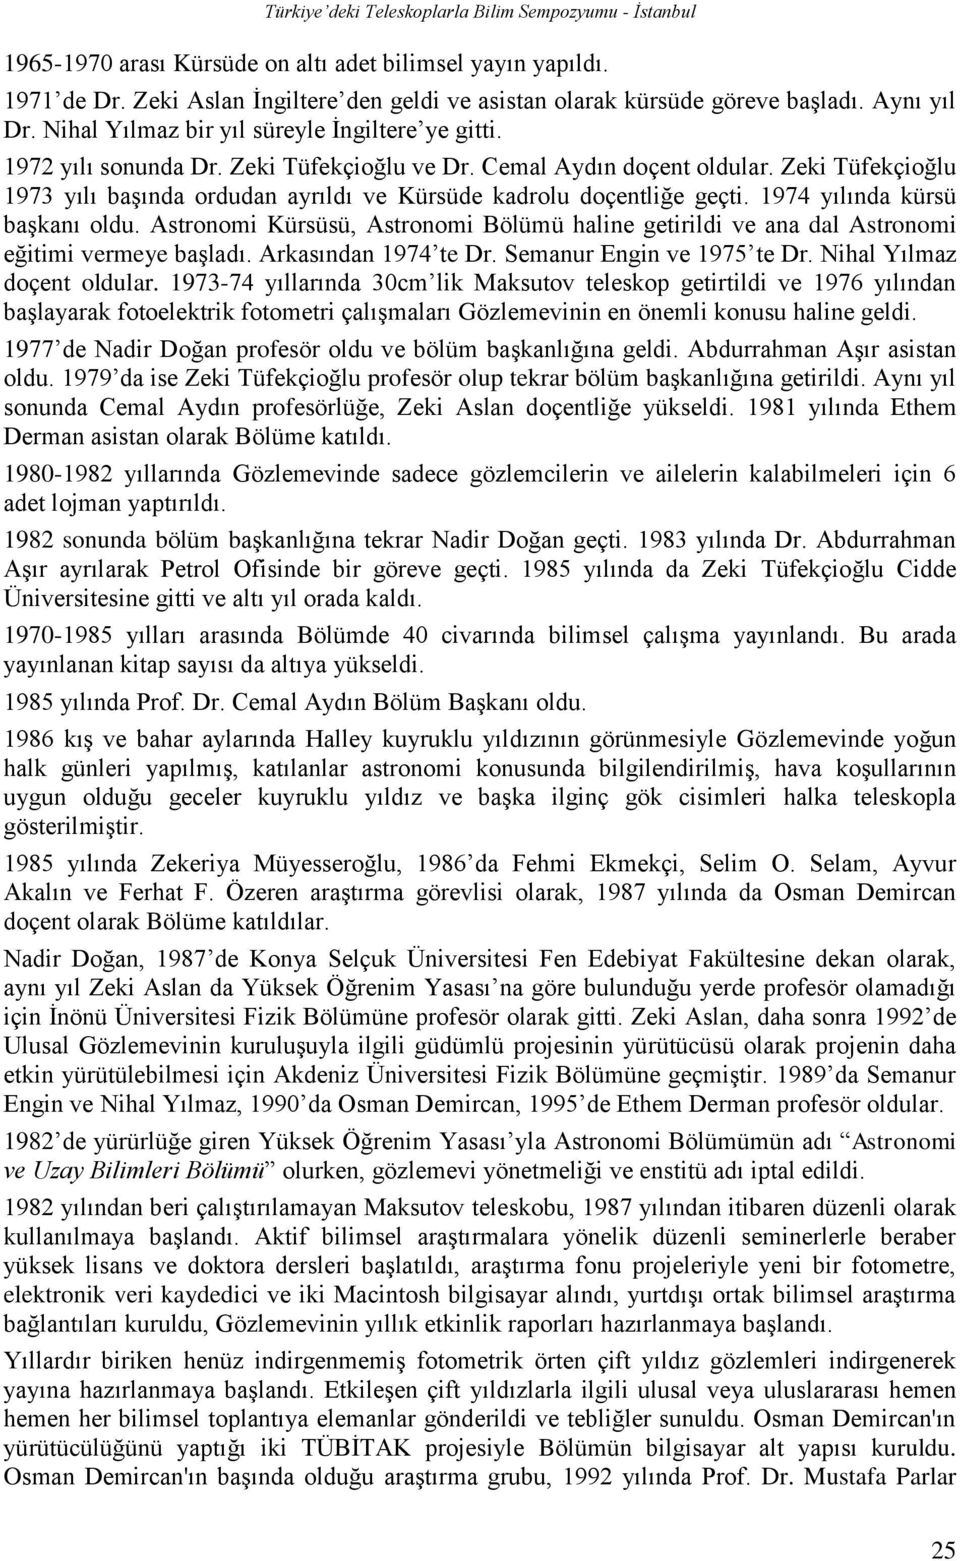 Zeki Tüfekçioğlu 1973 yılı başında ordudan ayrıldı ve Kürsüde kadrolu doçentliğe geçti. 1974 yılında kürsü başkanı oldu.